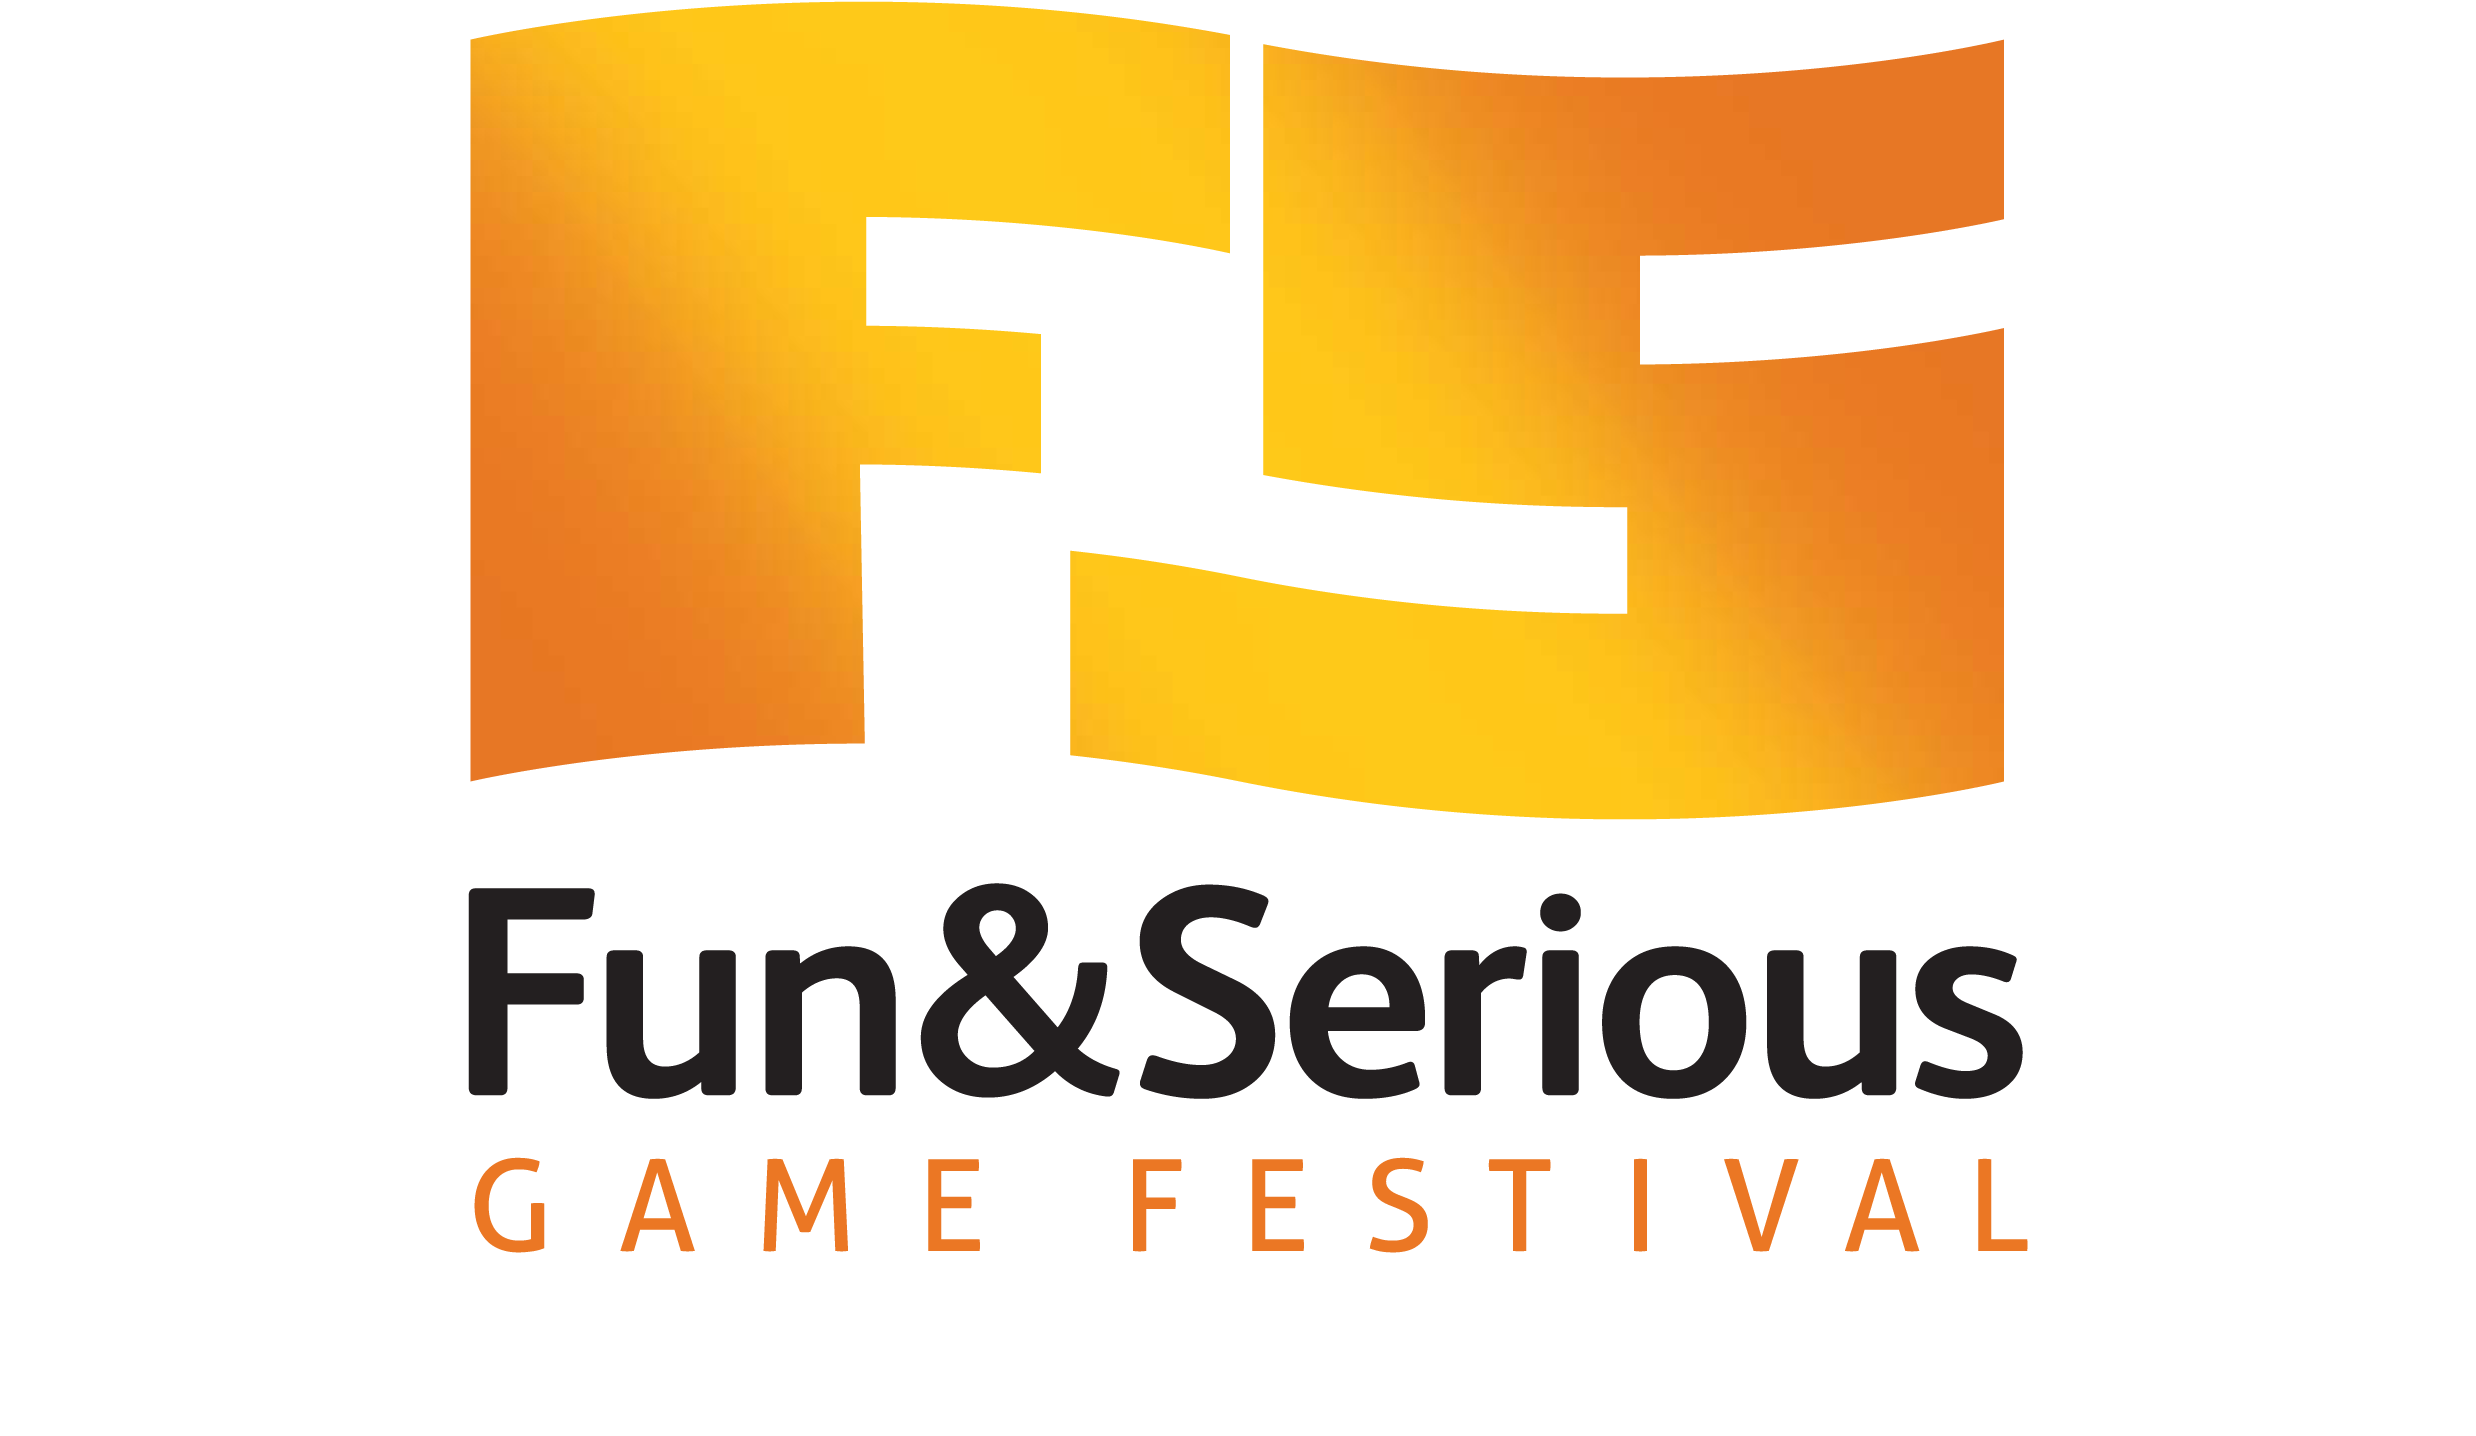 Fun & Serious Festival logotipo